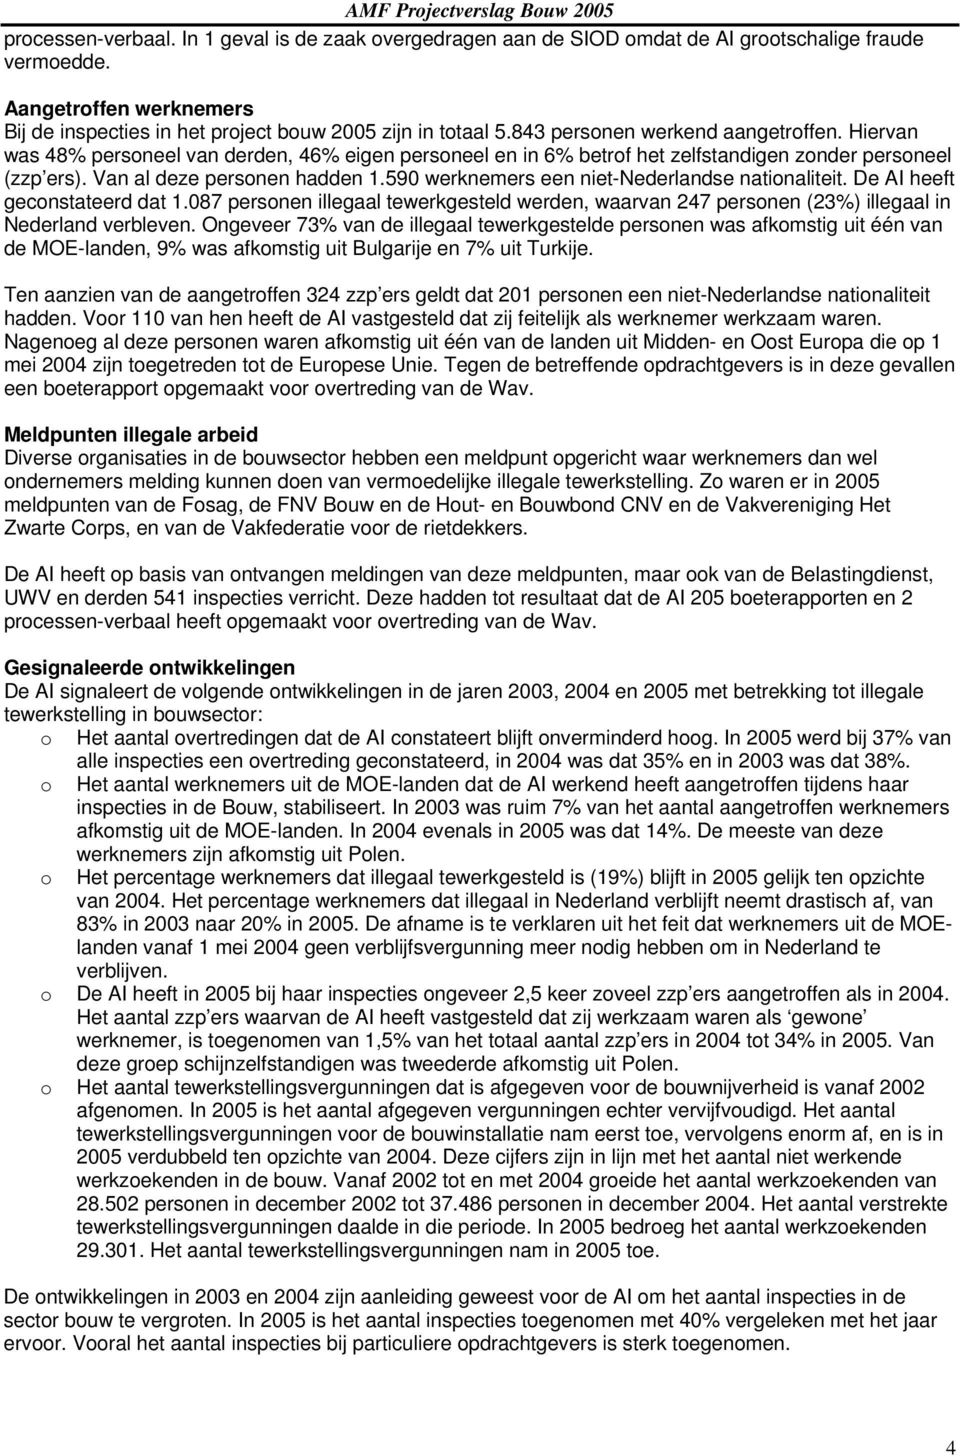 590 werknemers een niet-nederlandse nationaliteit. De AI heeft geconstateerd dat 1.087 personen illegaal tewerkgesteld werden, waarvan 247 personen (23%) illegaal in Nederland verbleven.